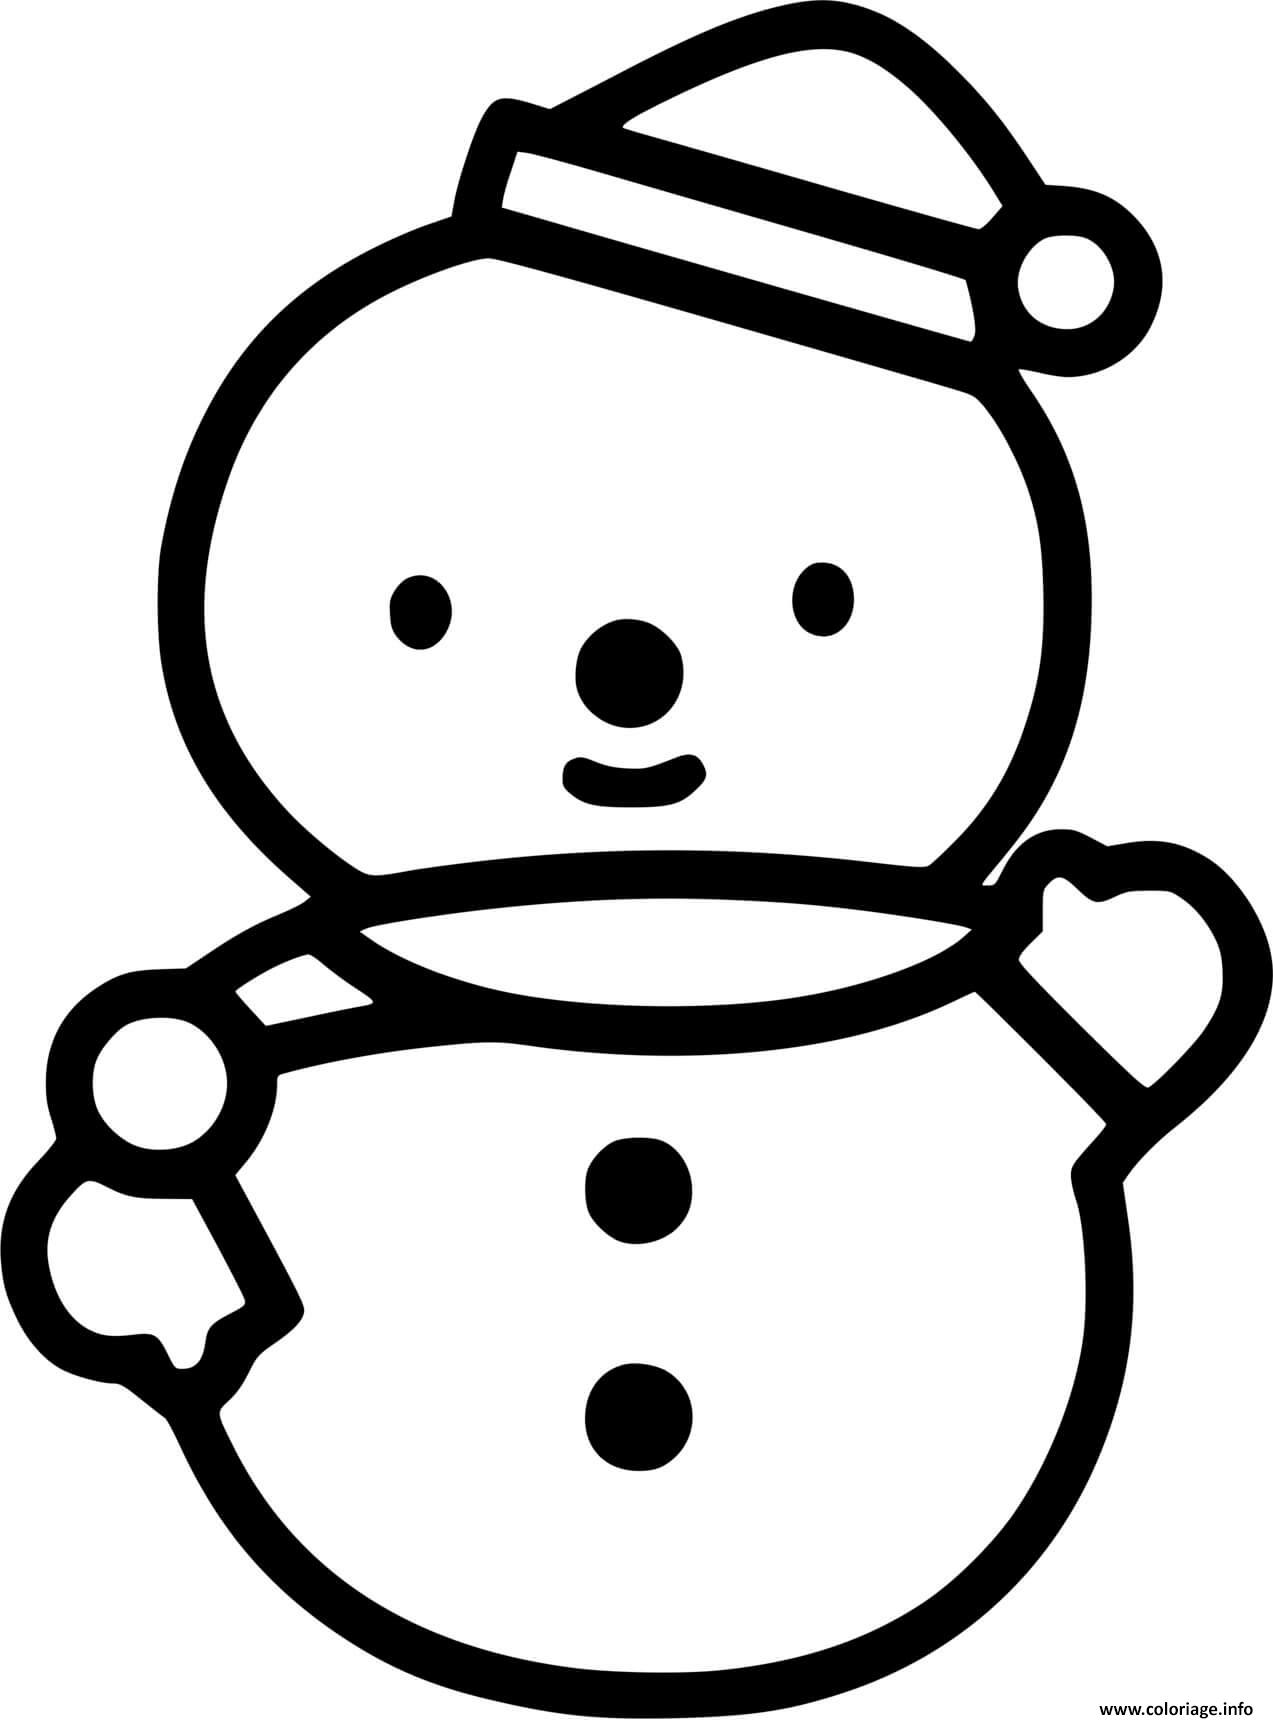 Dessin bonhomme de neige facile maternelle tres simple Coloriage Gratuit à Imprimer